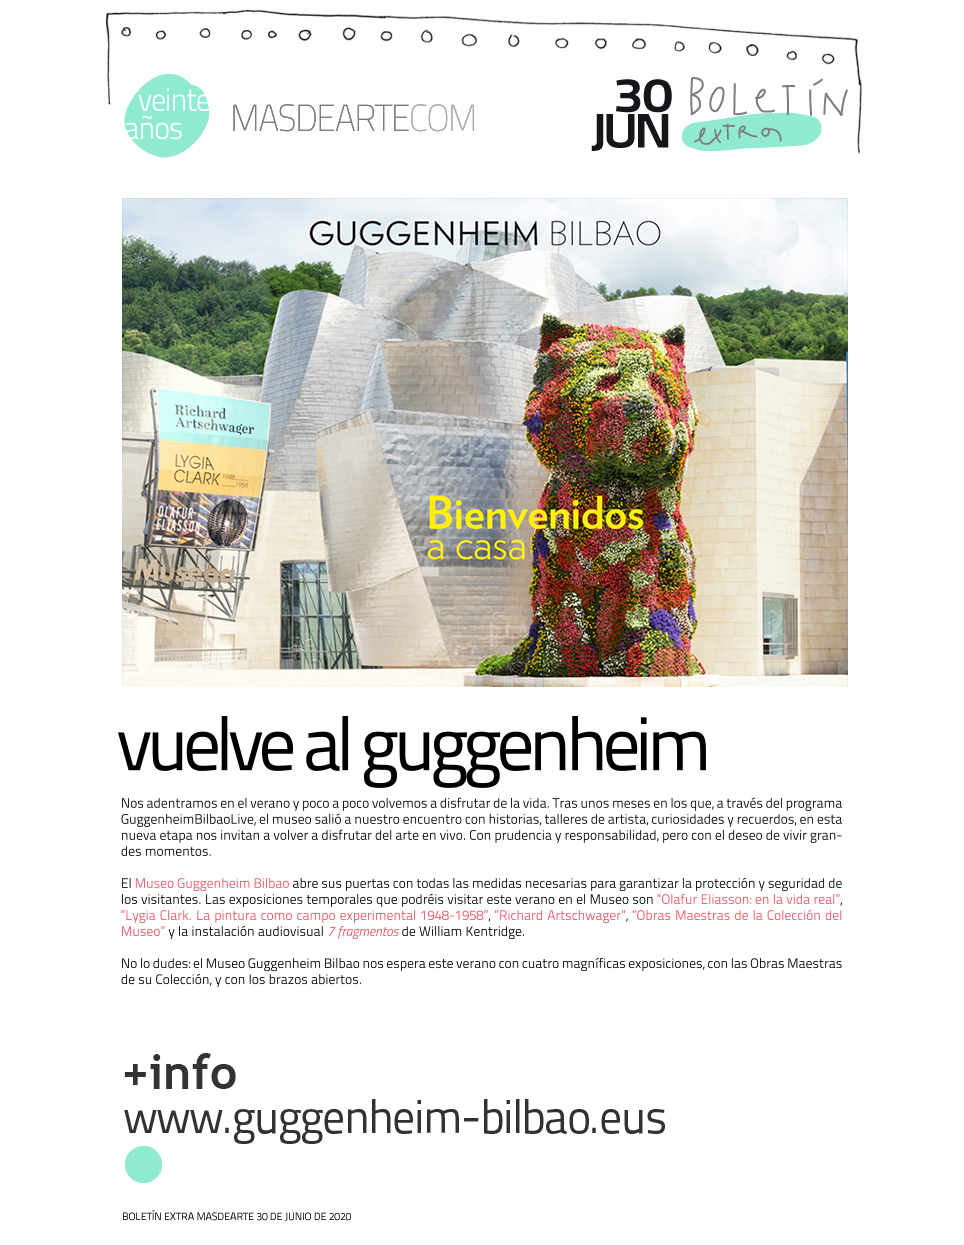 El Museo Guggenheim Bilbao reabre sus puertas. Las exposiciones que podréis visitar este verano en el Museo son Olafur Eliasson: en la vida real, Lygia Clark. La pintura como campo experimental
 1948-1958, Obras Maestras de la Colección del Museo, Richard Artschwager y la instalación audiovisual 7 fragmentos de William Kentridge.